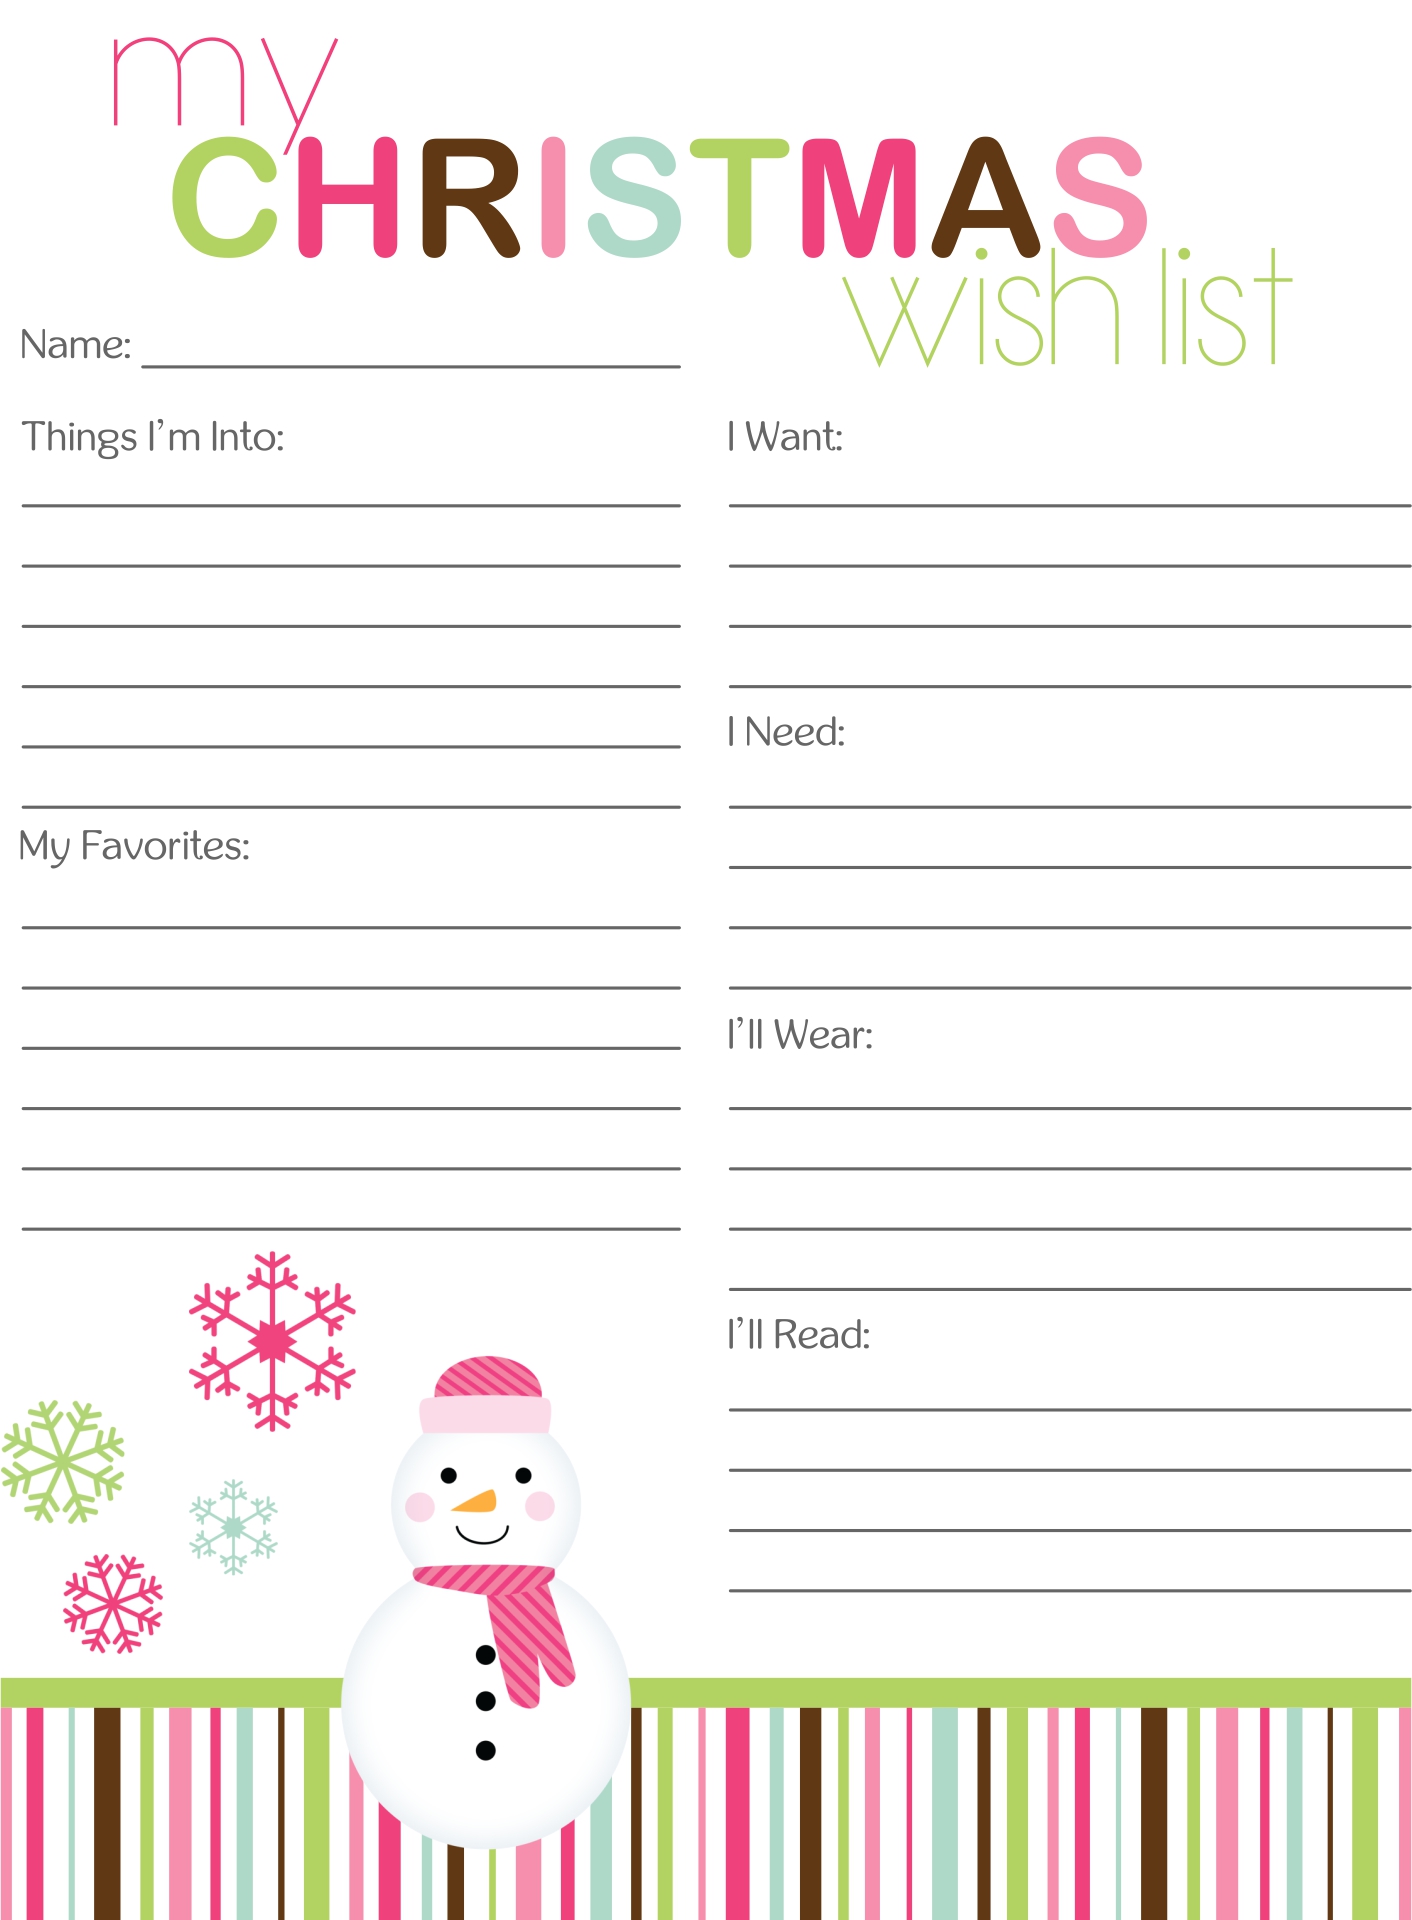 My Christmas Wish List Printable